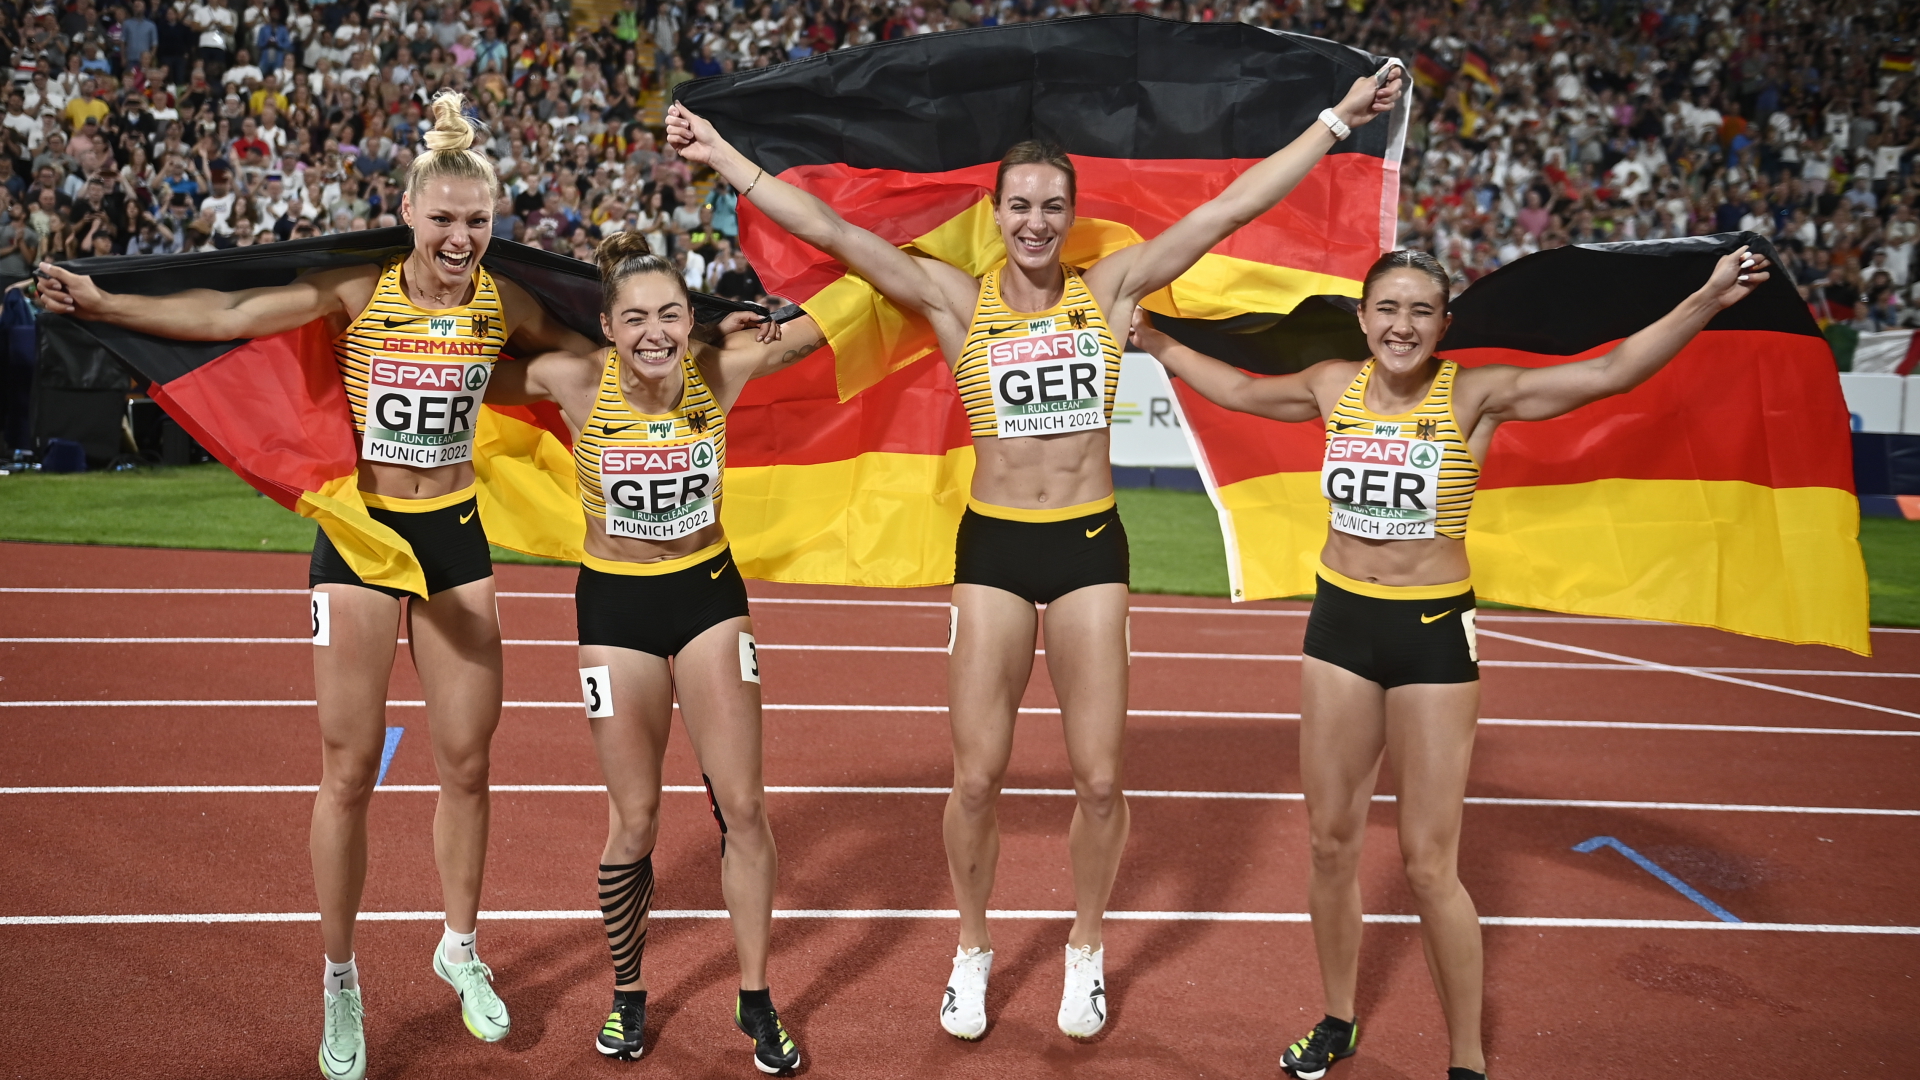 Die Sprinterinnen Alexandra Burghardt, Lisa Mayer, Gina Luckenkemper und Rebekka Haase bejubeln ihren Sieg über 4x100-Meter mit Deutschland-Fahnen. | EPA